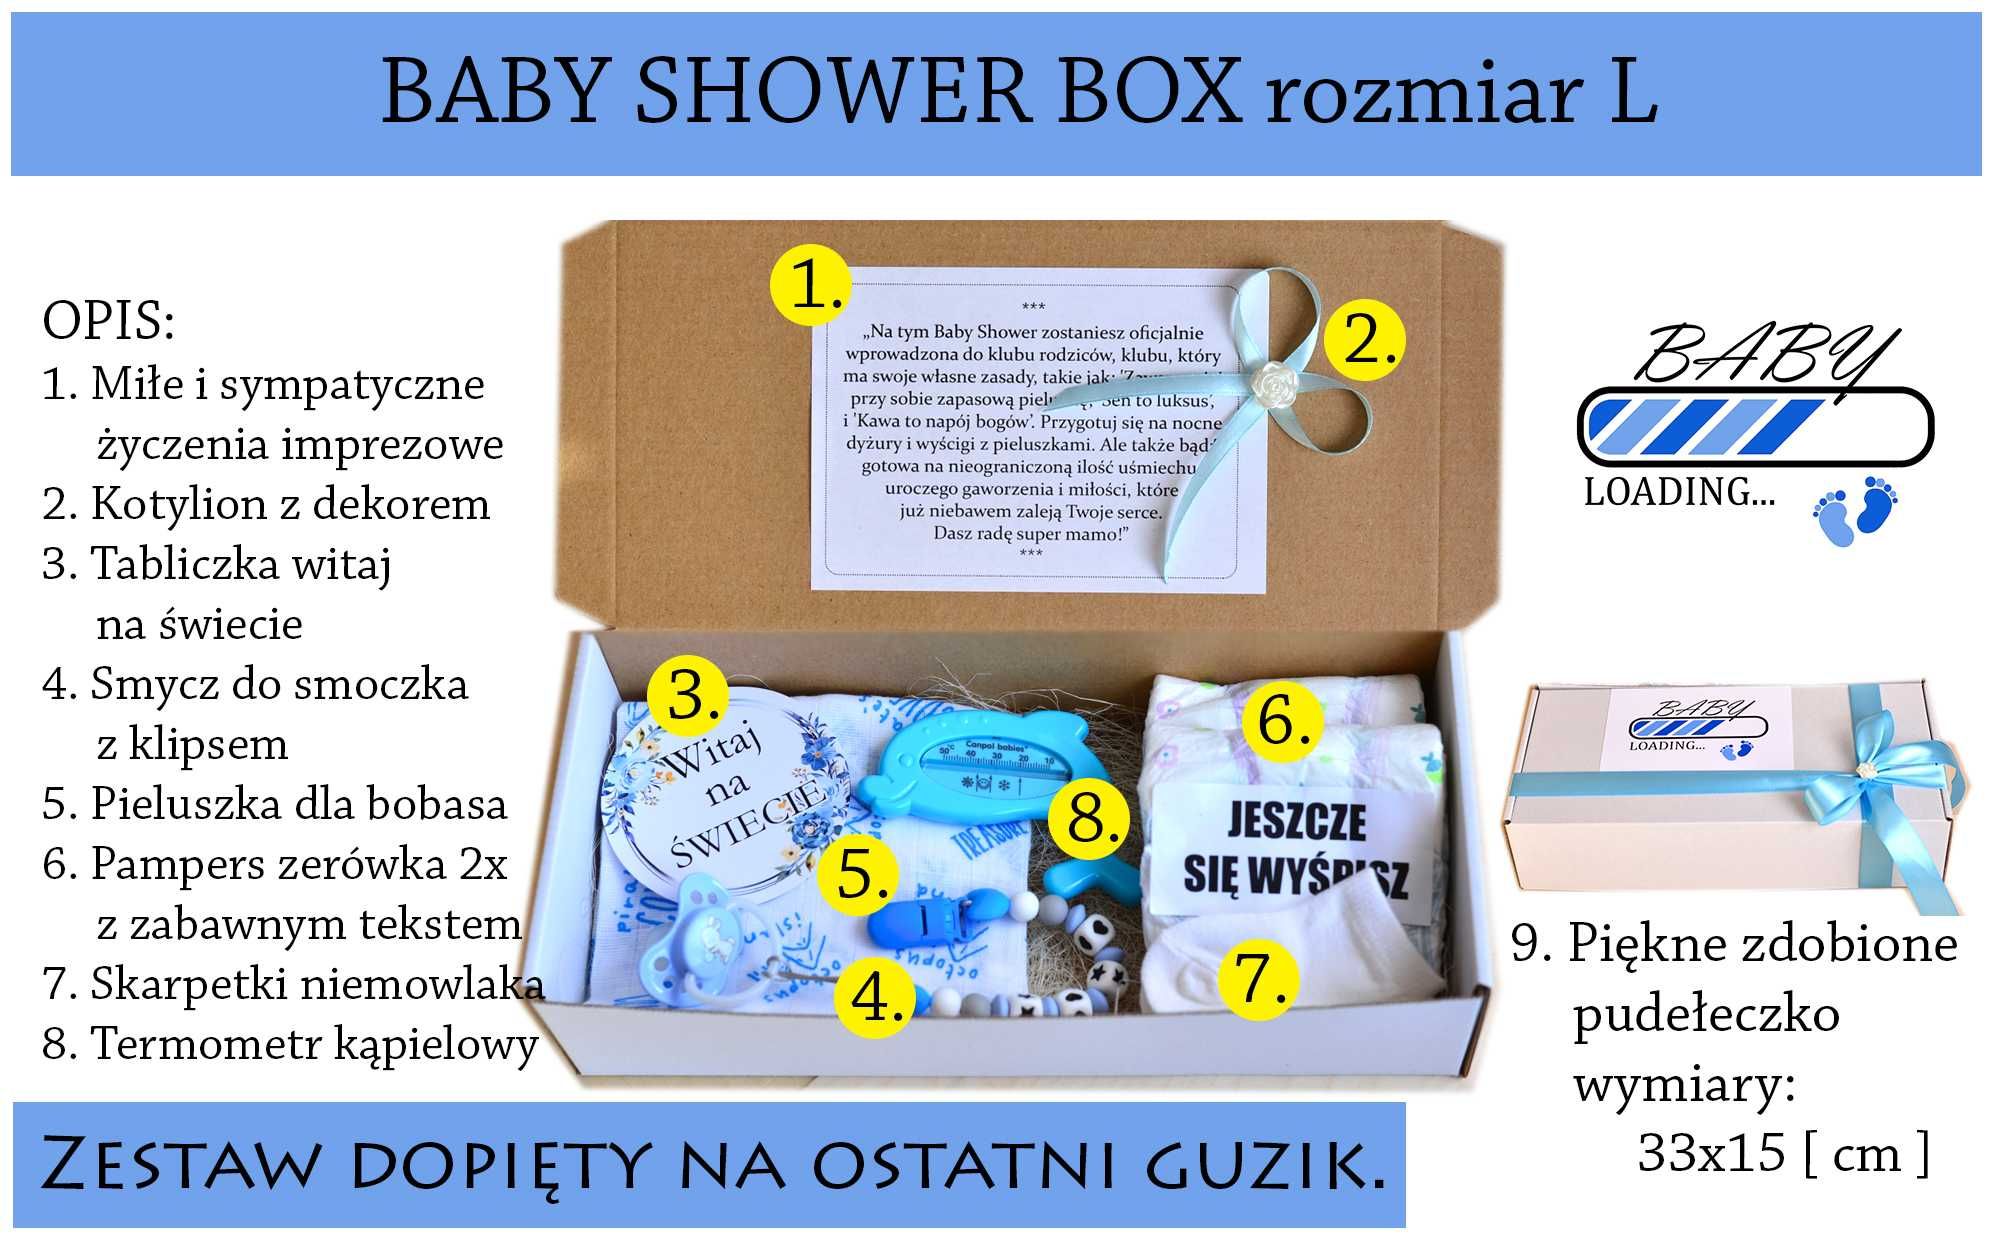 Zestaw BOX Prezentowy NA Baby Shower dla DZIEWCZYNKI